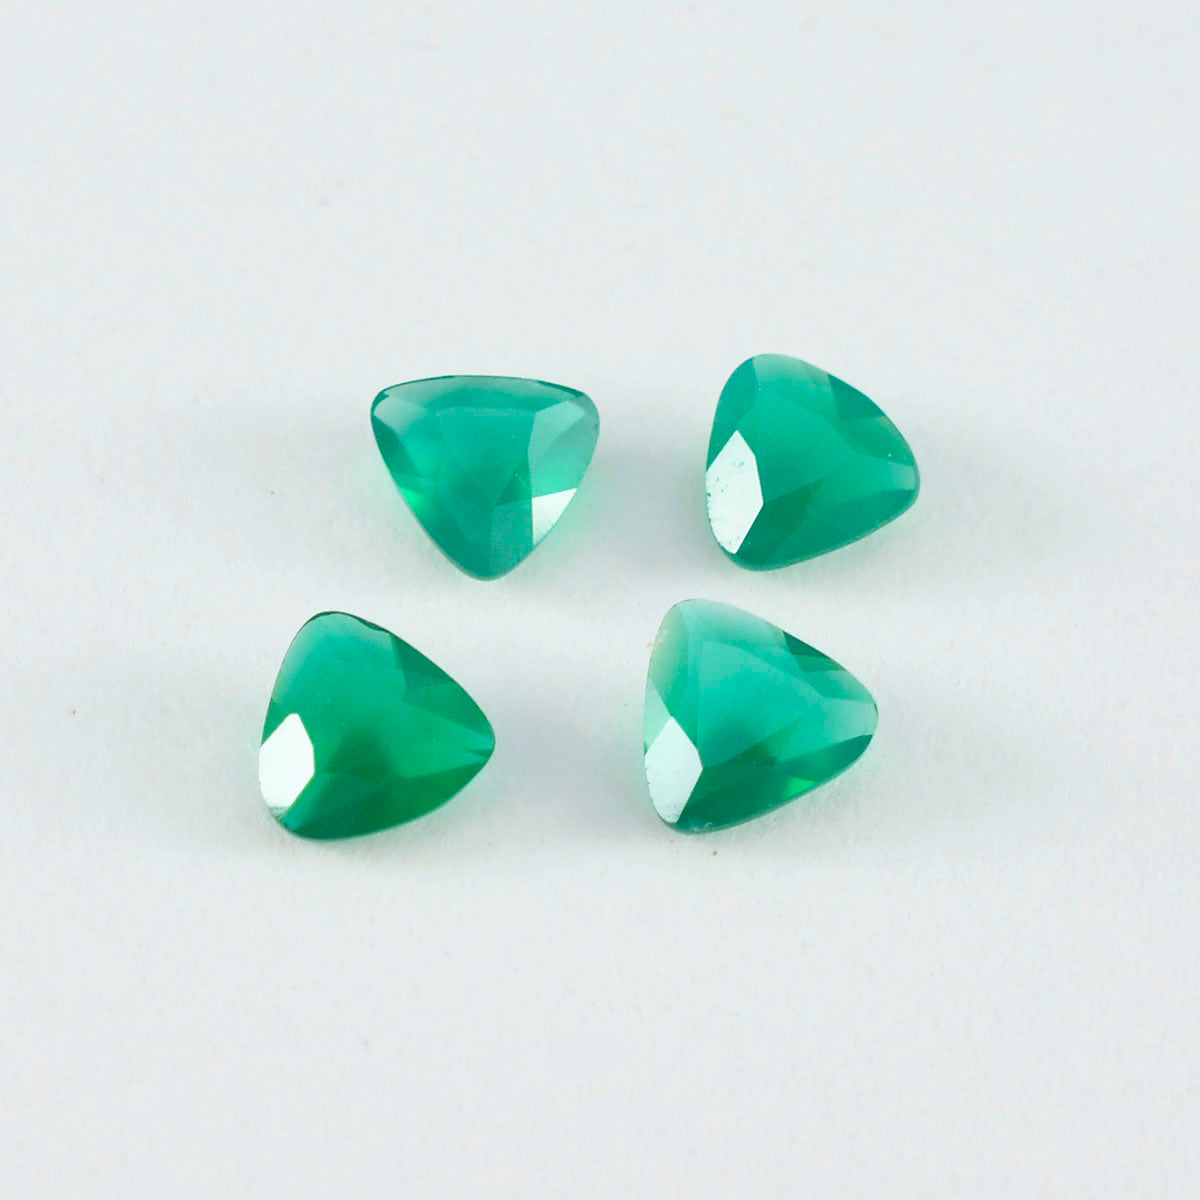 Riyogems 1PC Genuine Green Onyx Faceted 8x8 mm Trillion Shape wonderful Quality Gems